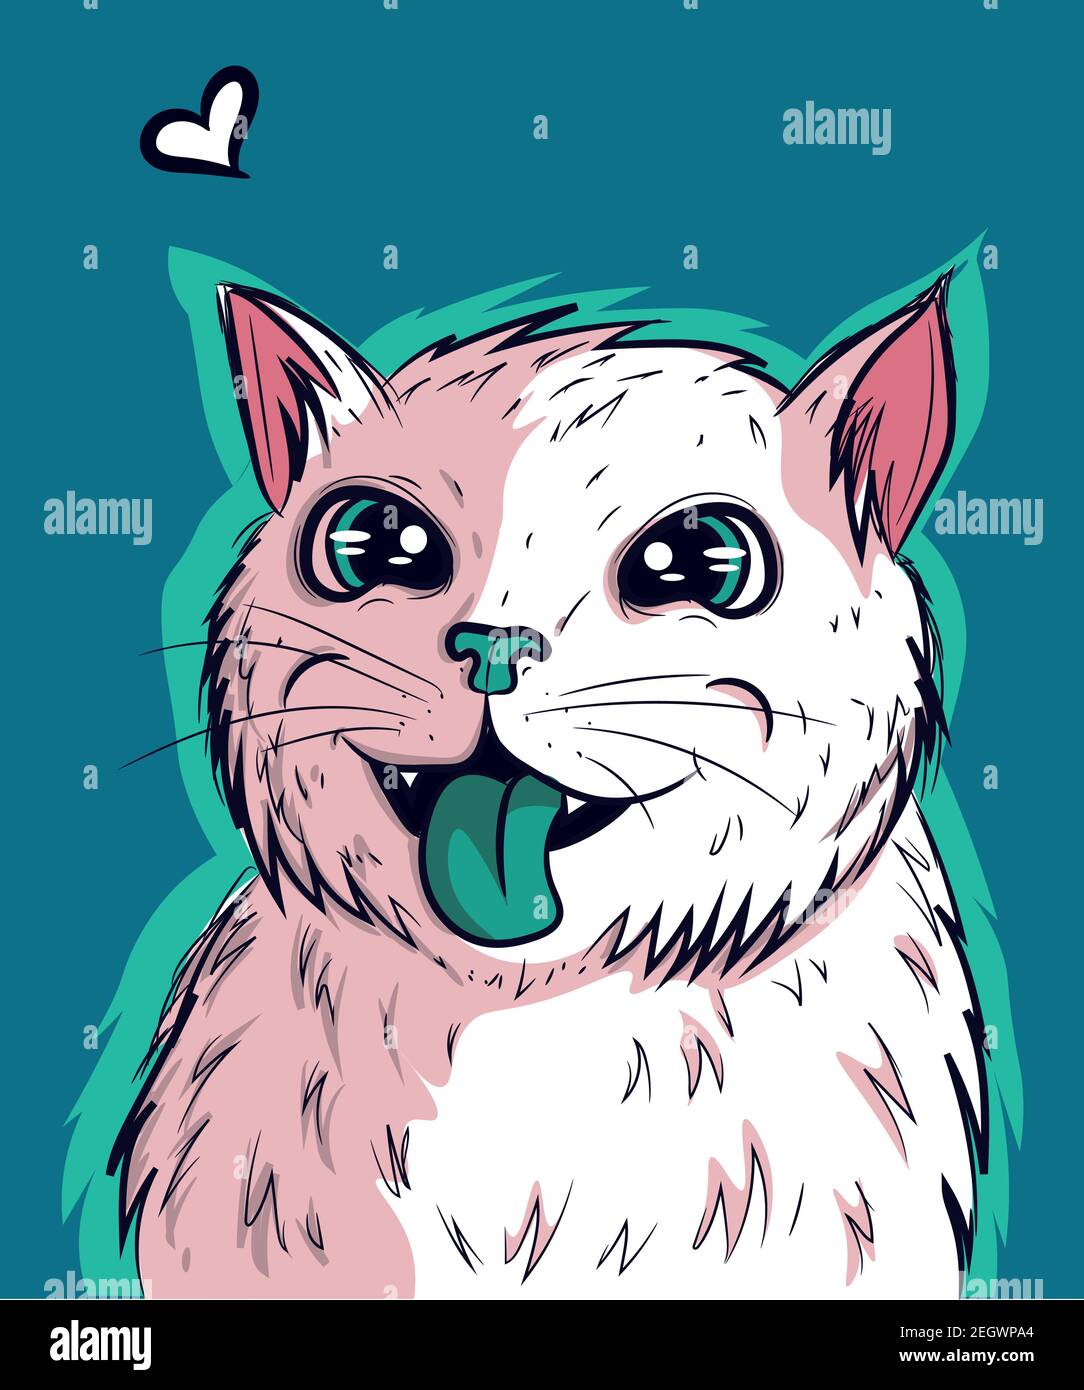 Vektor der weißen Kitty vibing mit seiner grünen Zunge aus. Katze mit großen Anime-Augen und psychedelischem Look. Stock Vektor